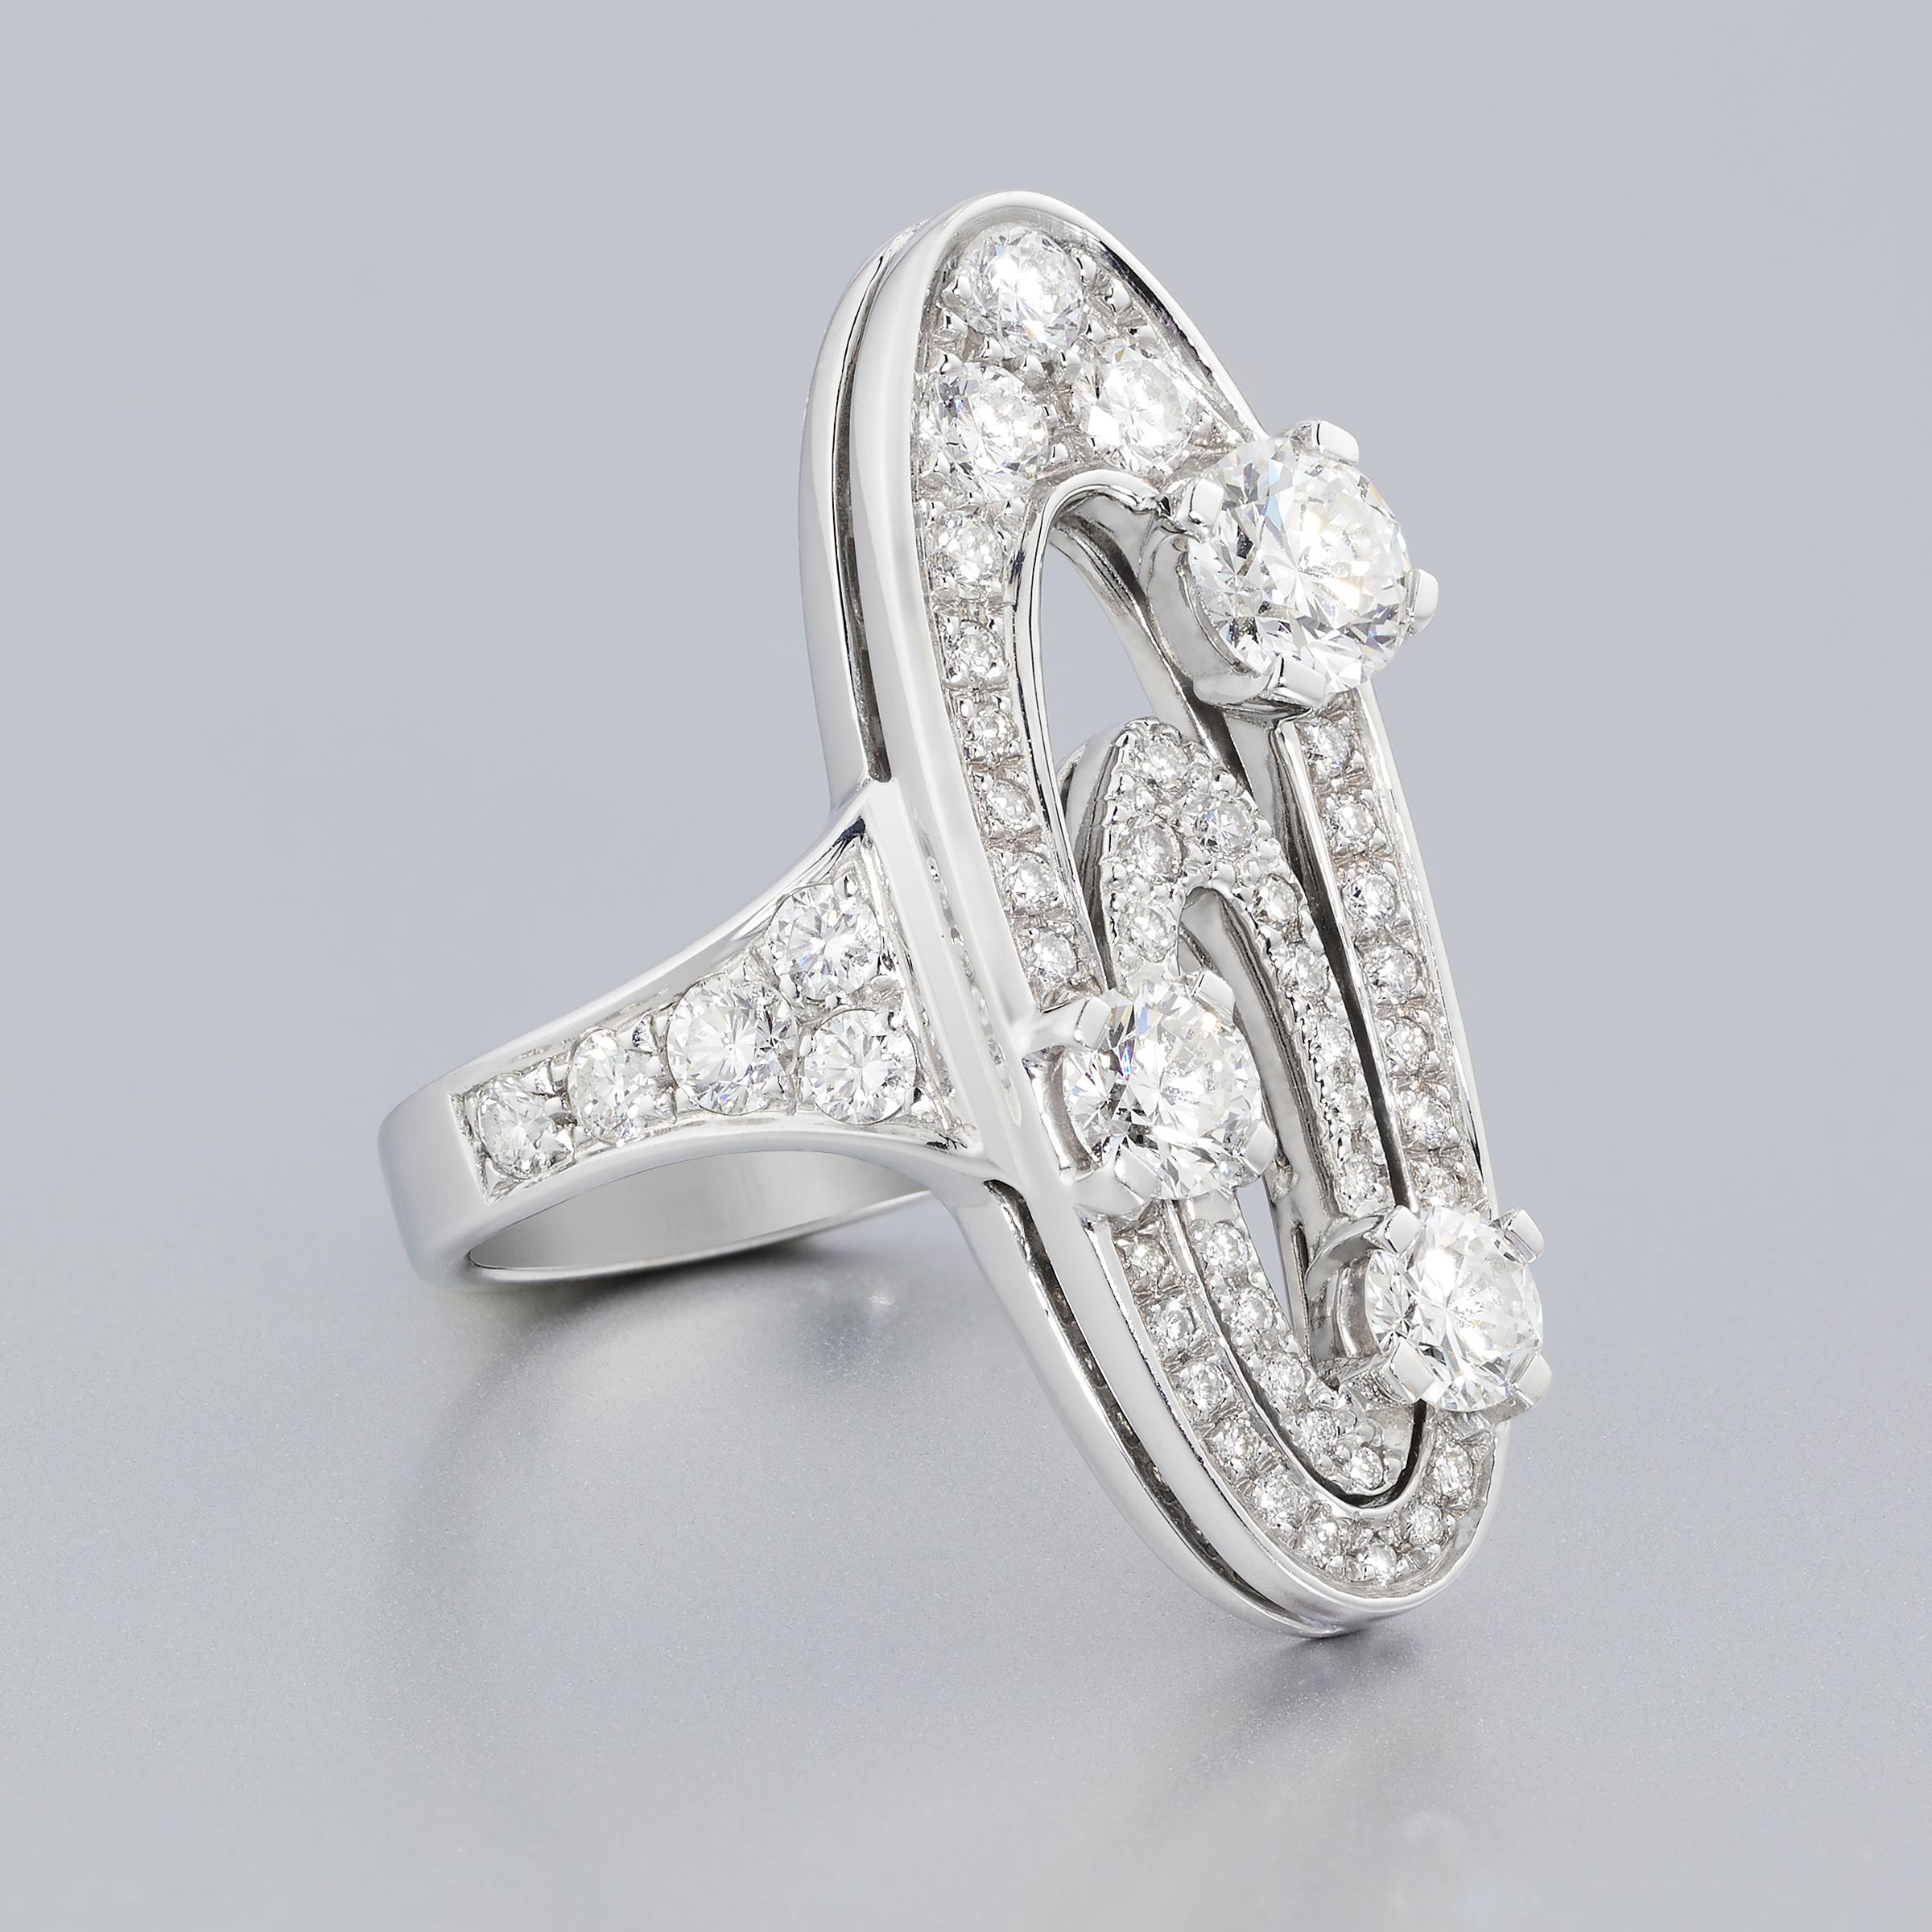 Bague en diamant Bulgari incroyablement élégante de la collection Elysium mettant en valeur environ 2,5 carats de diamants blancs fins sertis dans de l'or 18 carats. Cette collection Bulgari s'inspire de l'esthétique High Style Deco et la bague